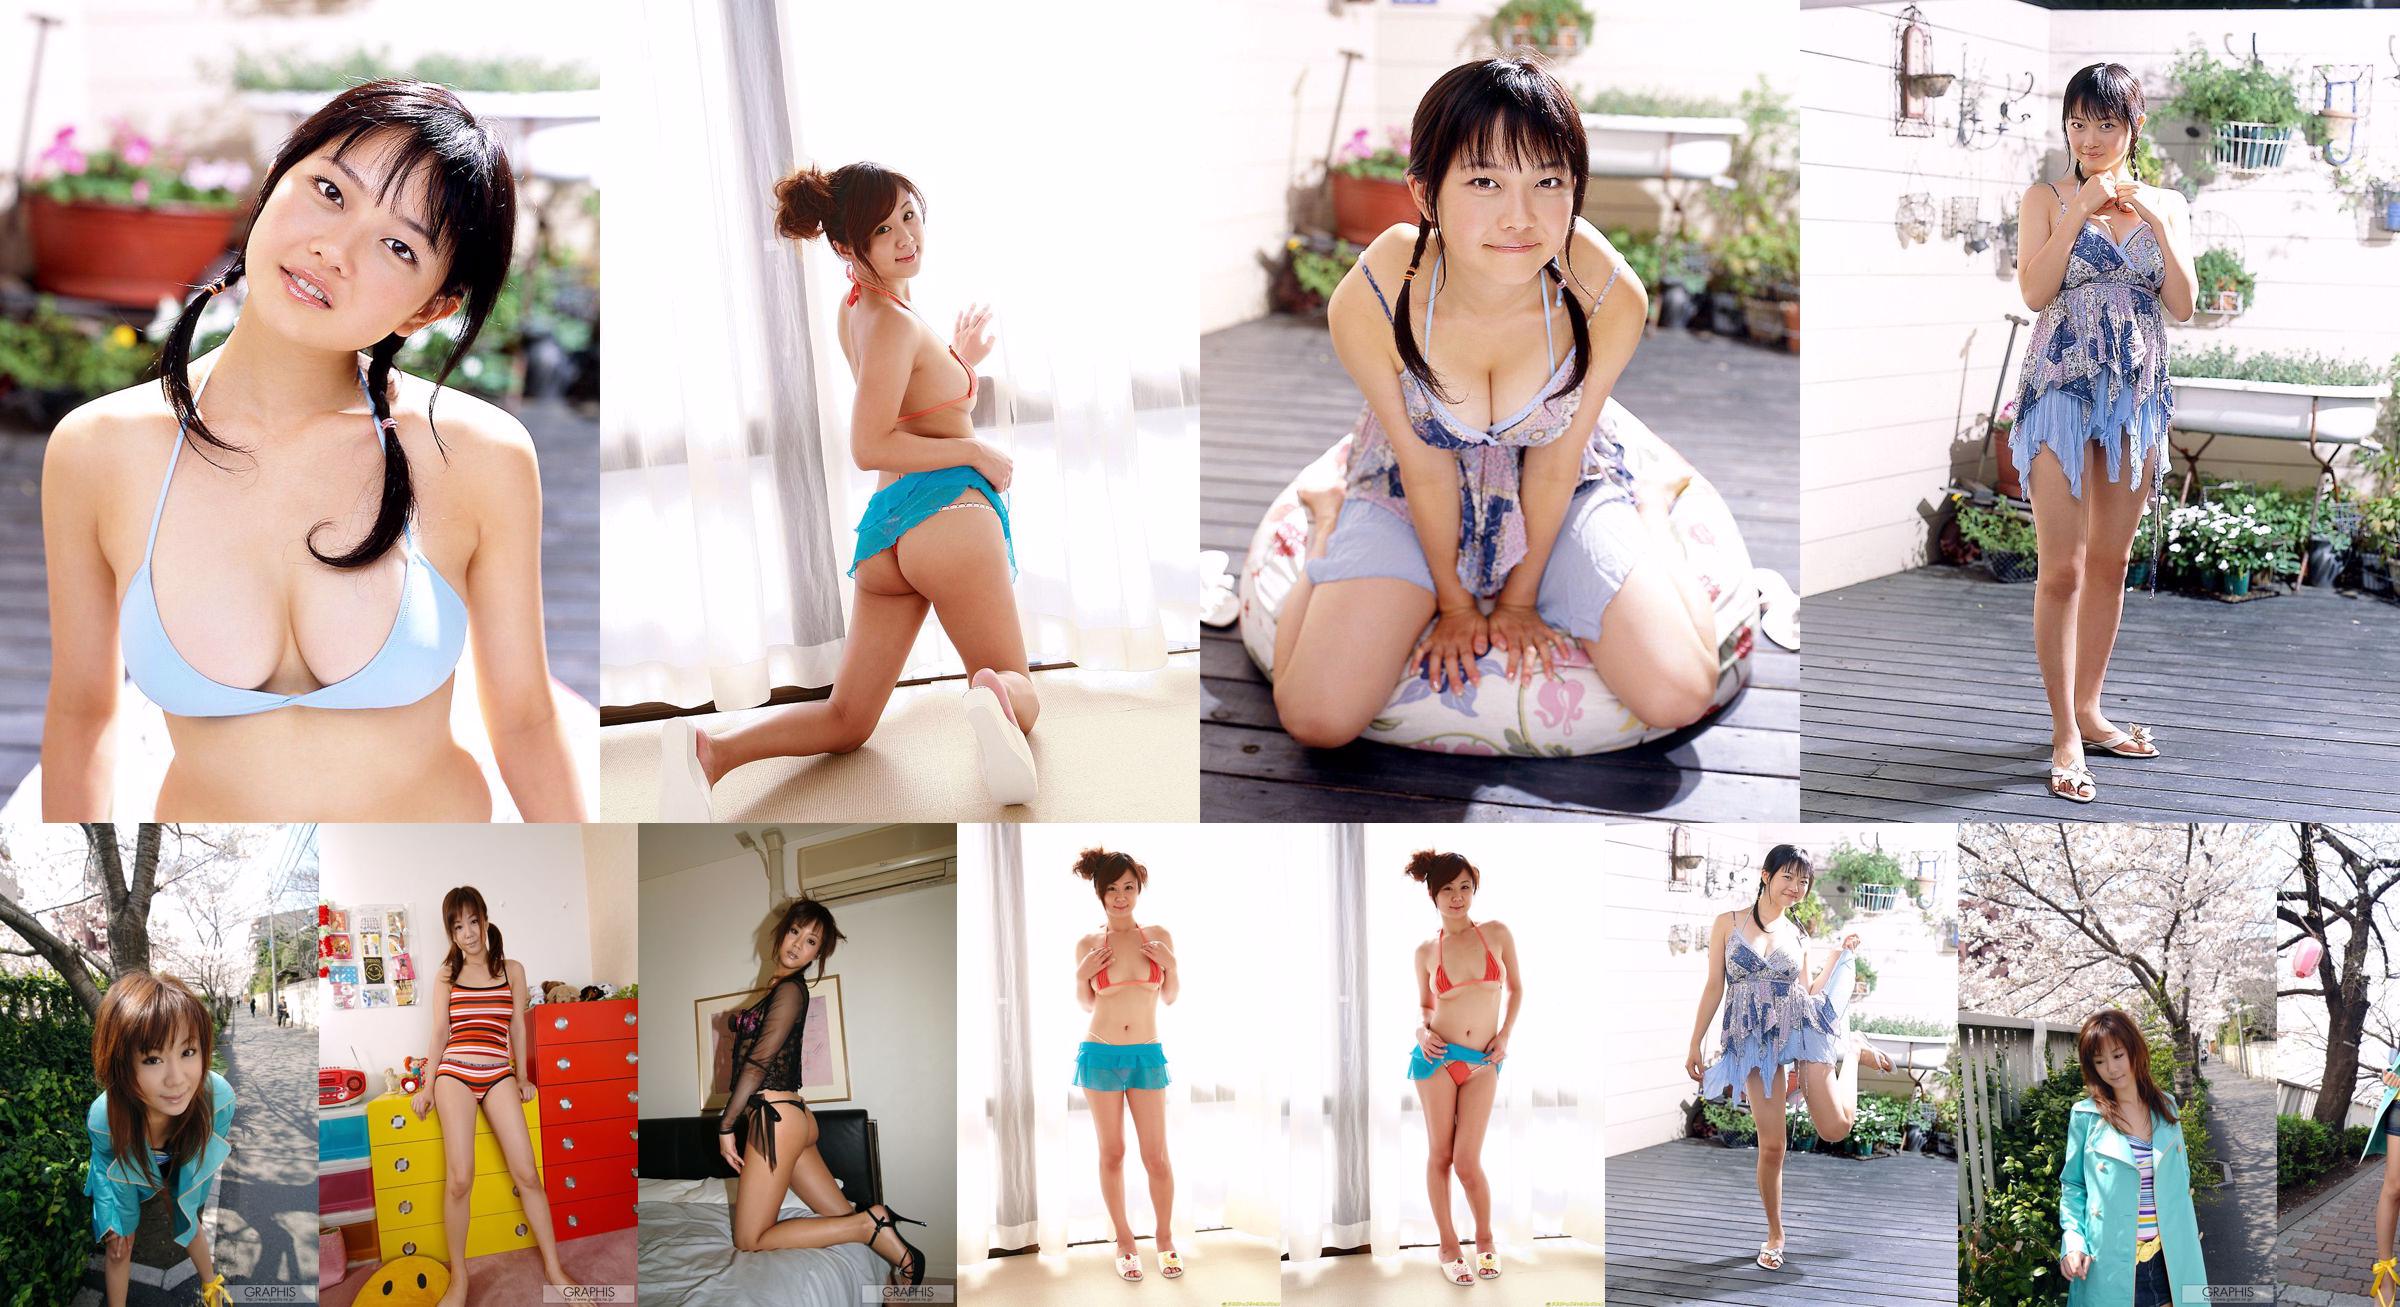 Maki Hoshino / Maki Hoshino "Juicy" [Graphis] Chicas No.2a7352 Página 1